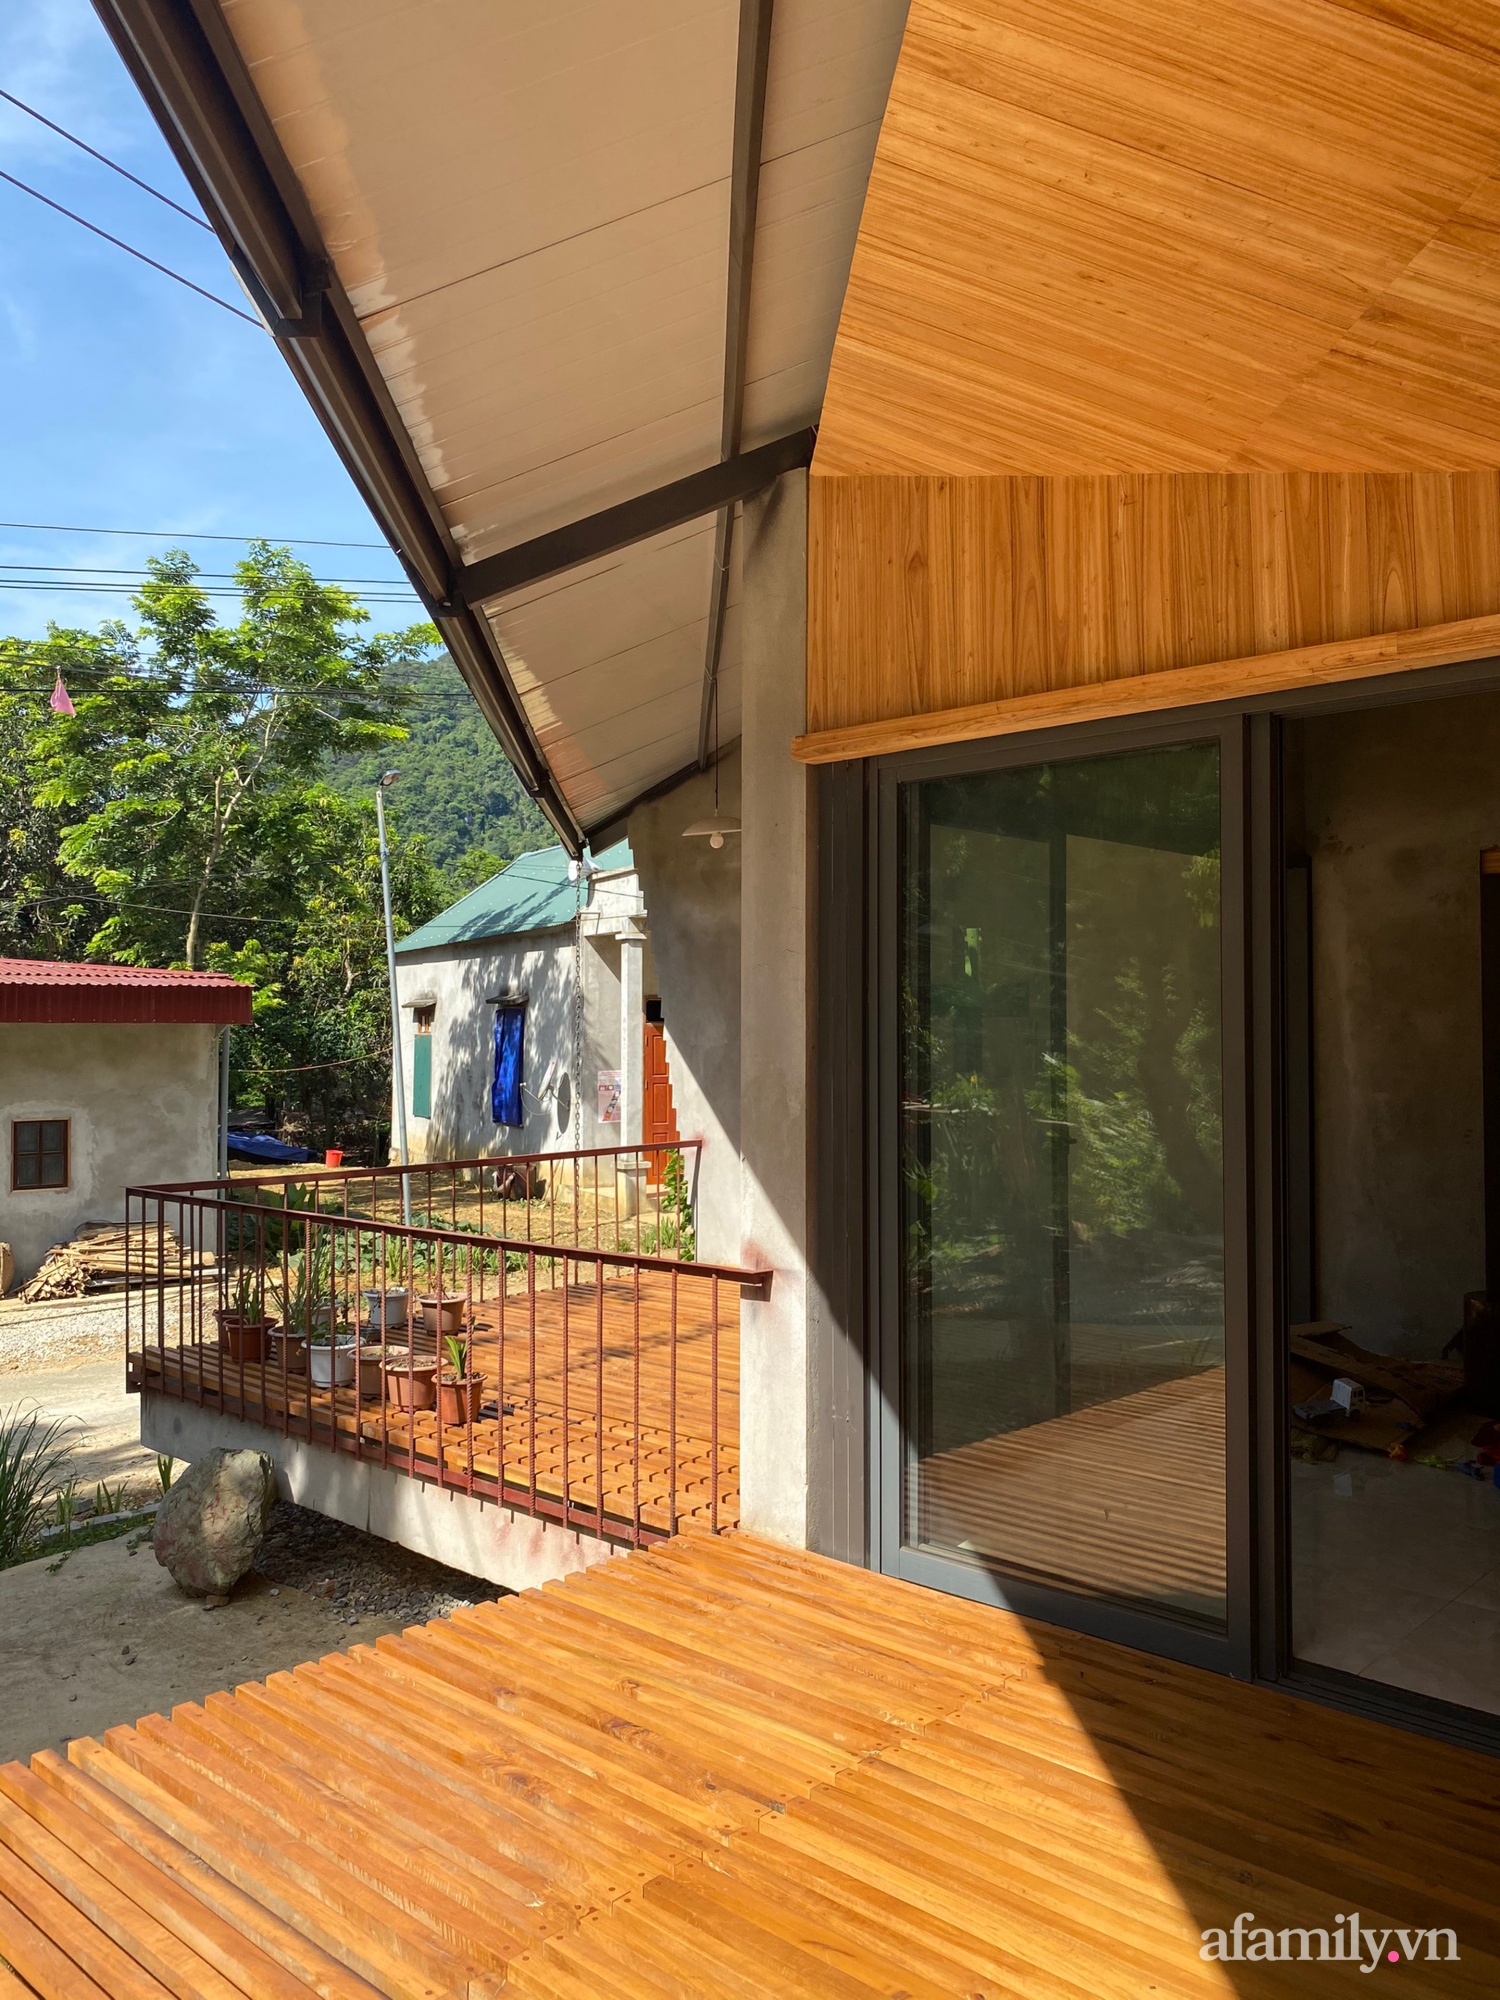 Ngôi nhà mát rượi dưới nắng gắt mùa hè nhờ thiết kế mái hai tầng và ống khói 3 mét ở Thanh Hóa - Ảnh 13.